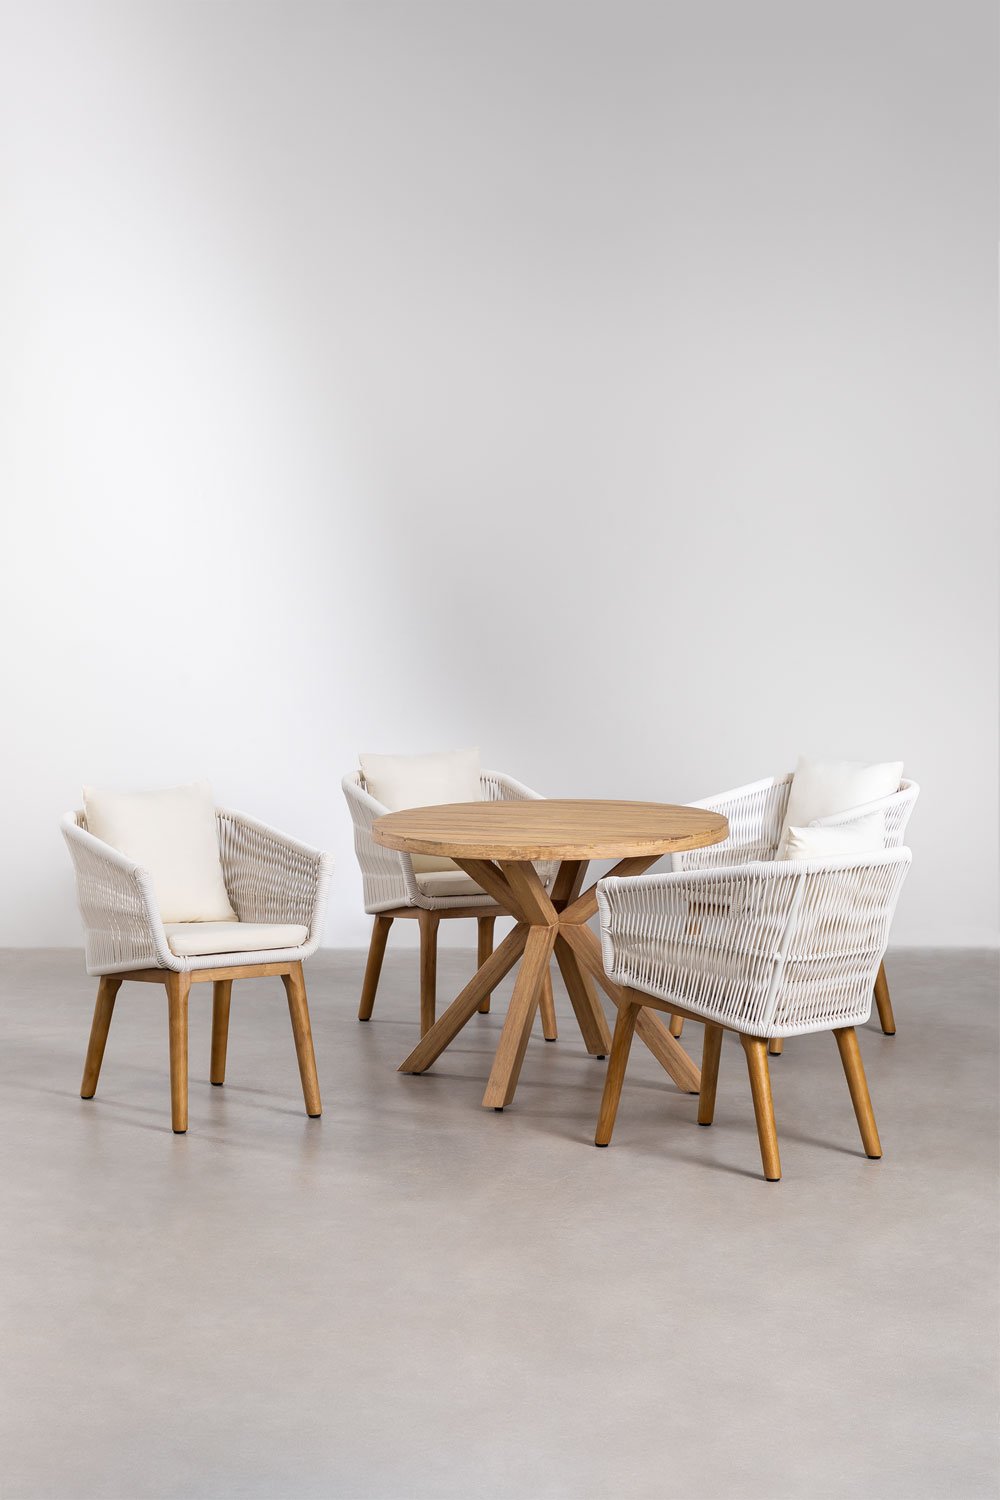 Okrągły drewniany stół (Ø100 cm) Naele i 4 krzesła do jadalni Barker, obrazek w galerii 1